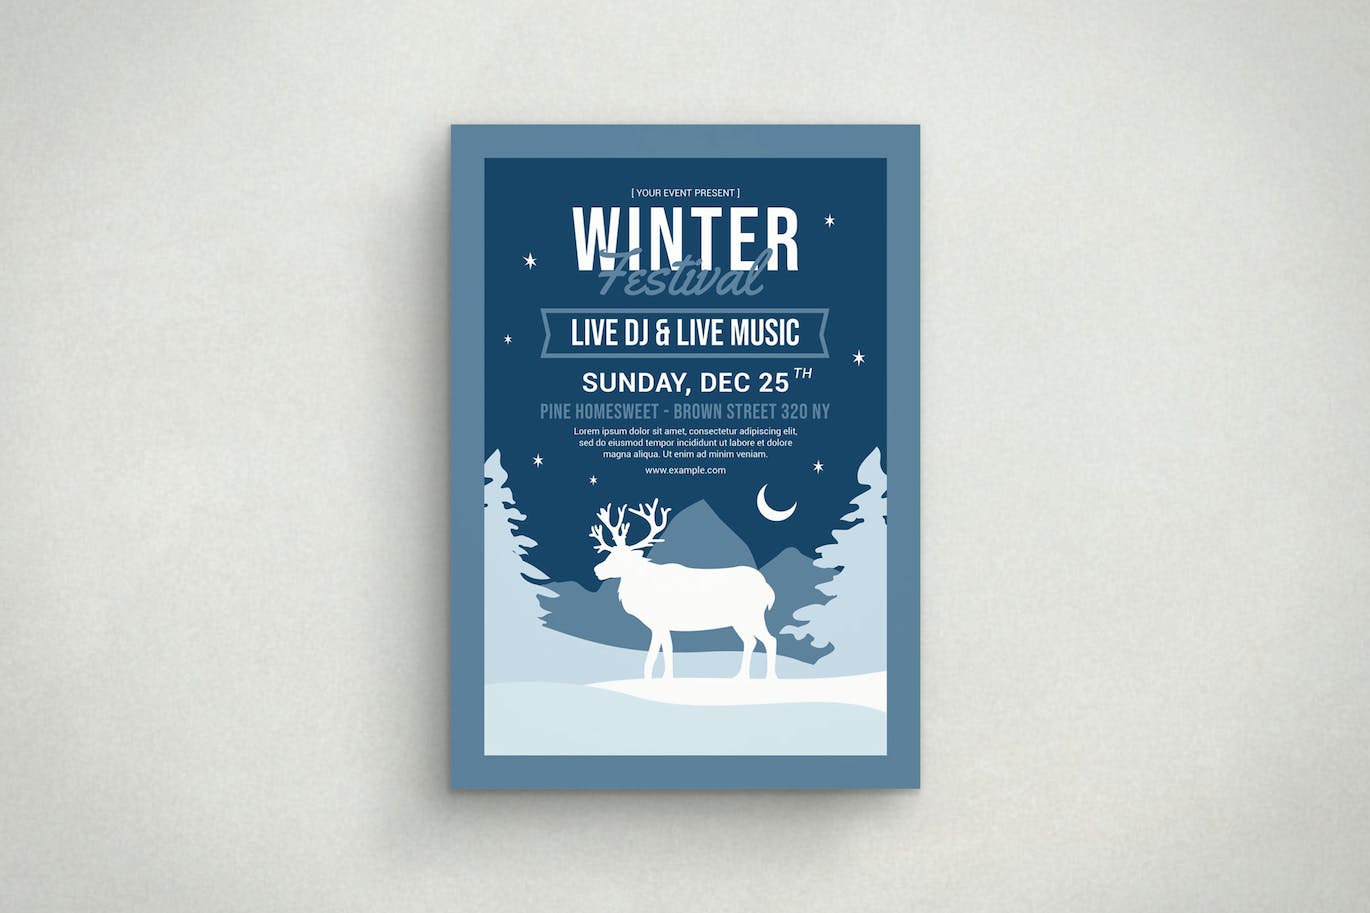 麋鹿冬天活动传单素材 Winter Festival 设计素材 第1张